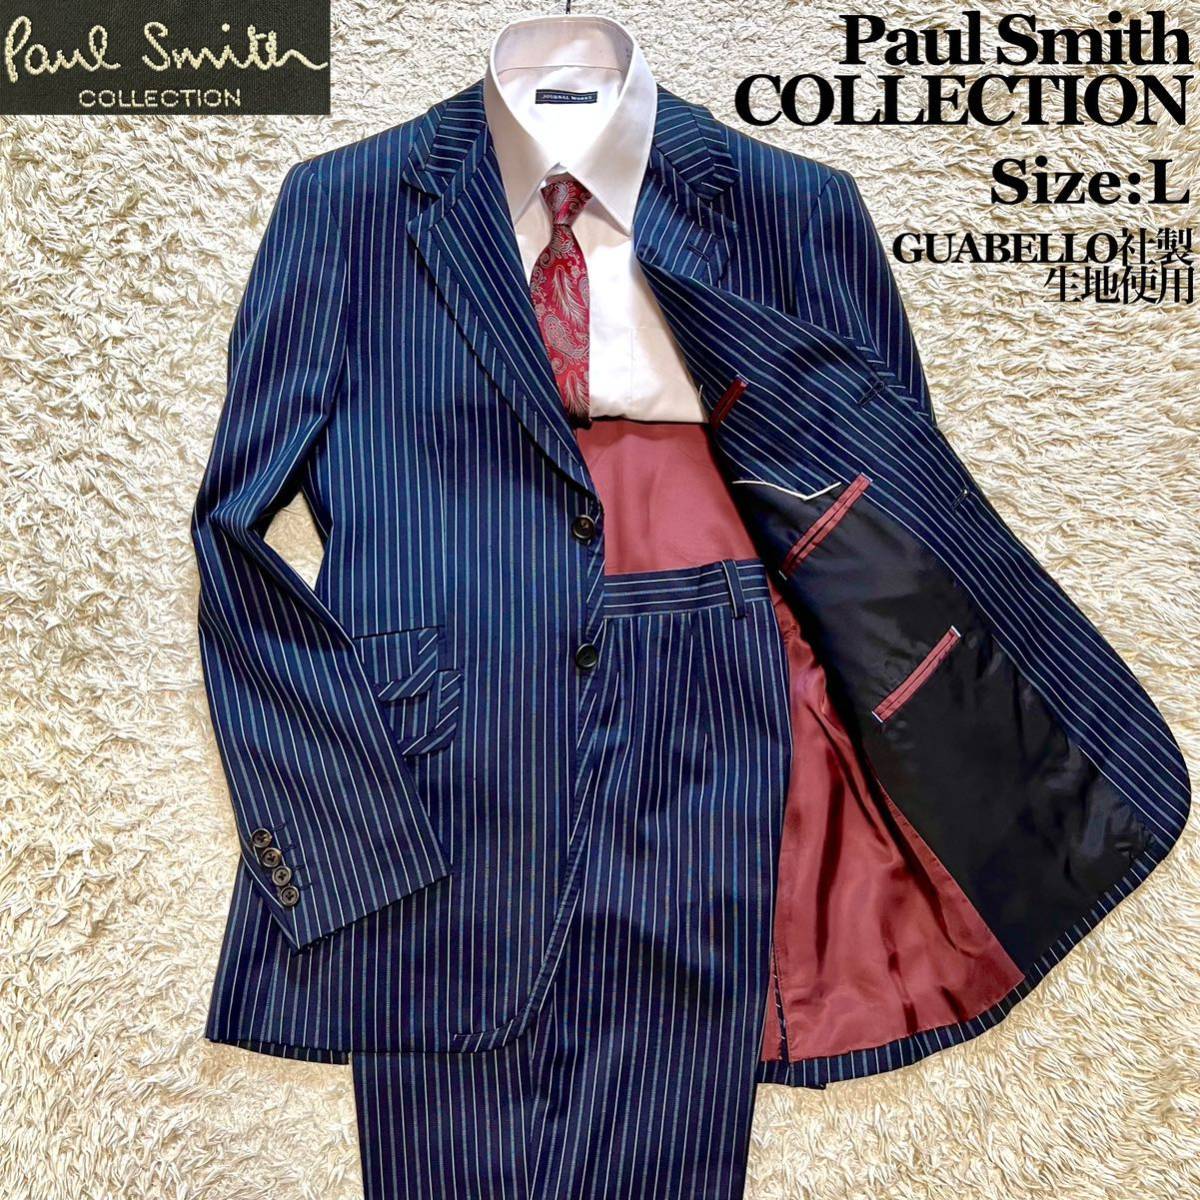 Paul Smith COLLECTION ポールスミス コレクション グアベロ社生地 スーツ セットアップ ブルー系 紺 ストライプ 2ボタン L  大きいサイズ